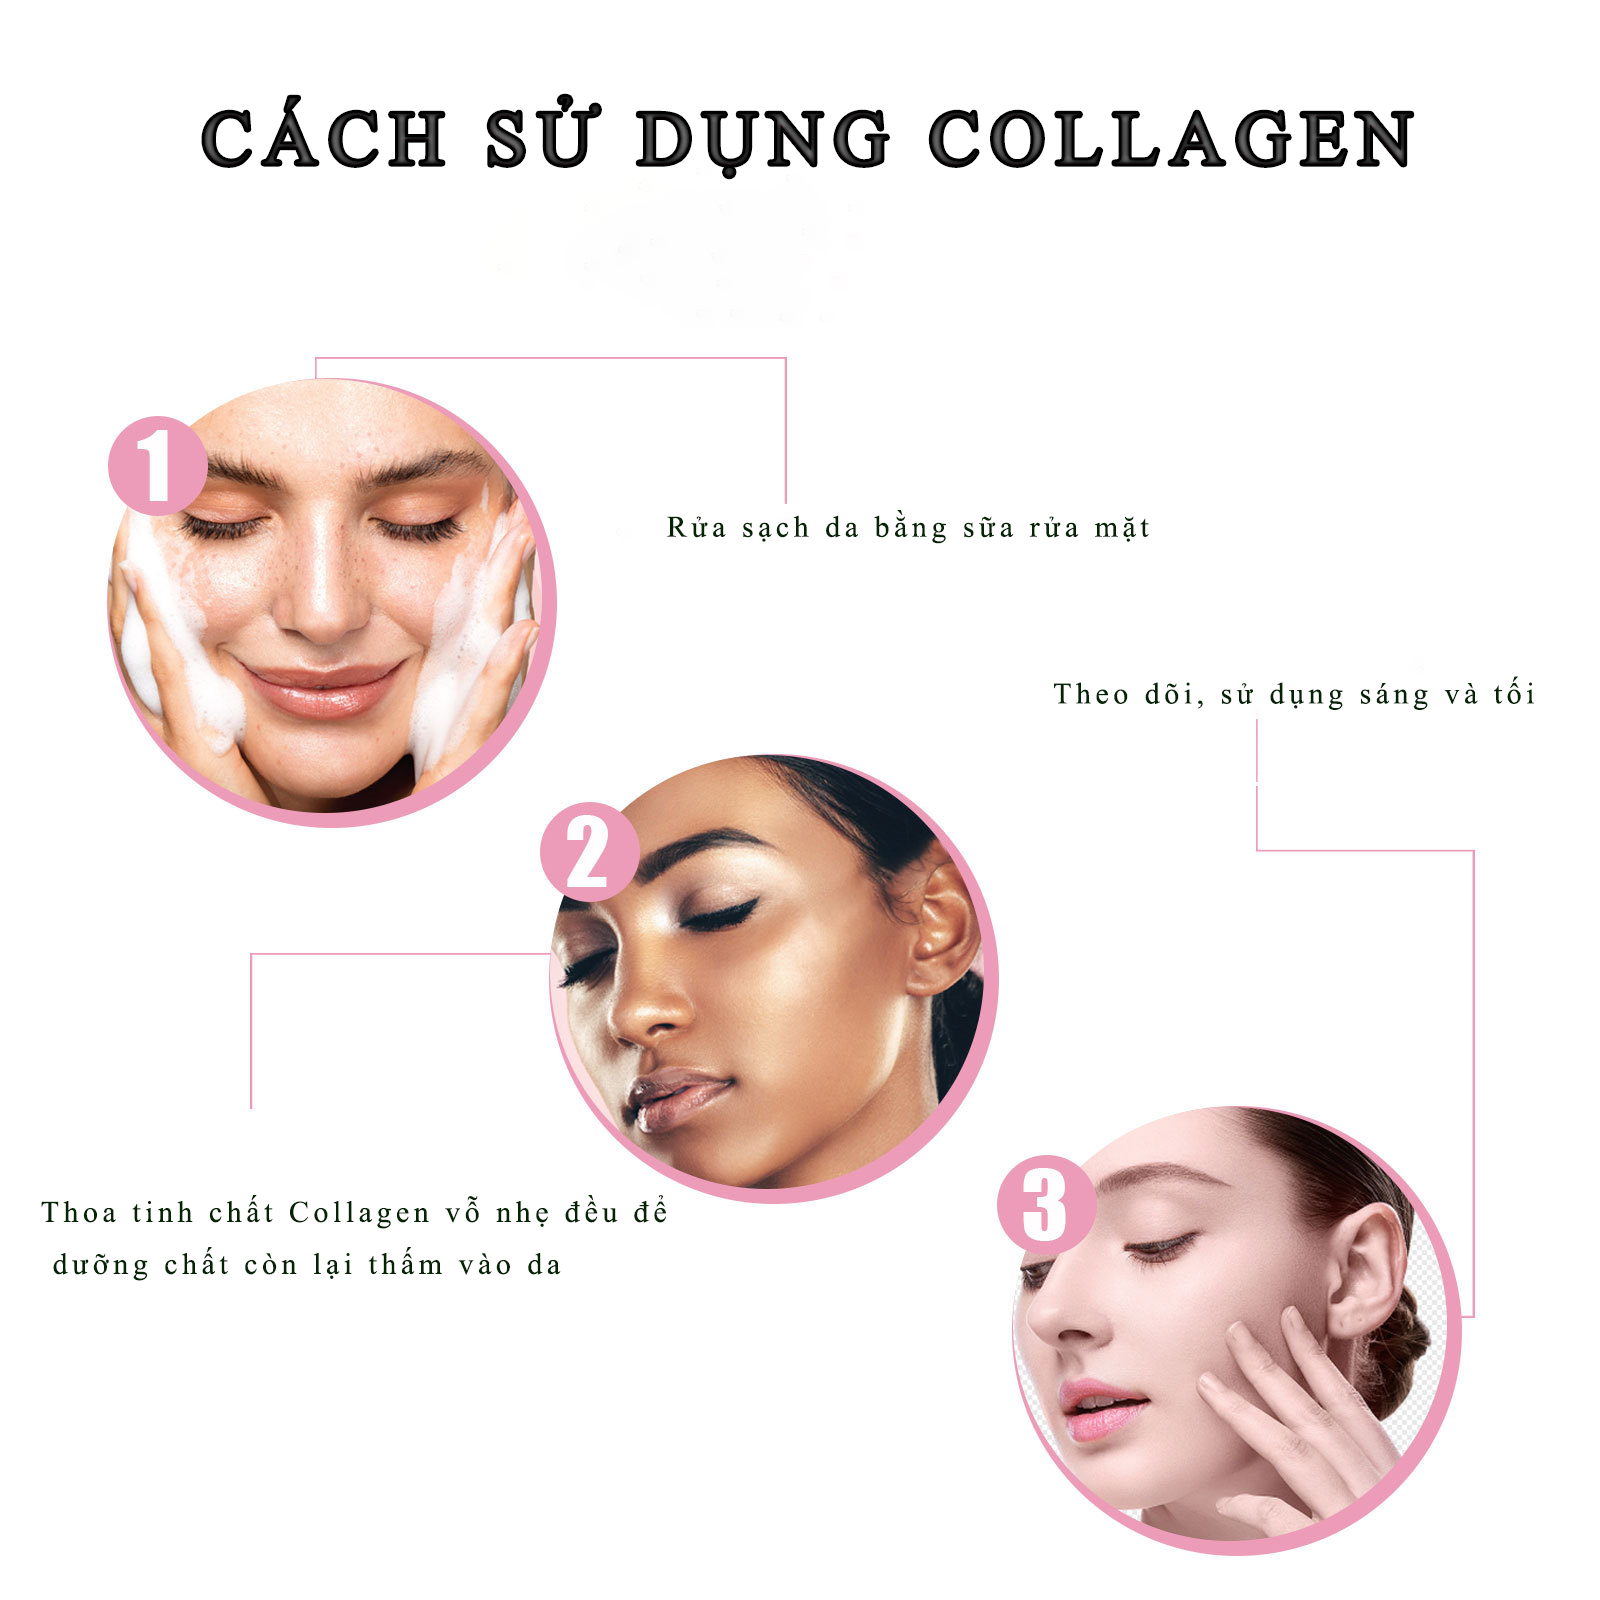 Tinh chất Collagen Serum Loren Professional  giúp Bổ sung collagen giúp xóa mờ các nếp nhăn và nâng cơ da mặt. Cải thiện các dấu hiệu lão hóa, ngăn ngừa hình thành nám